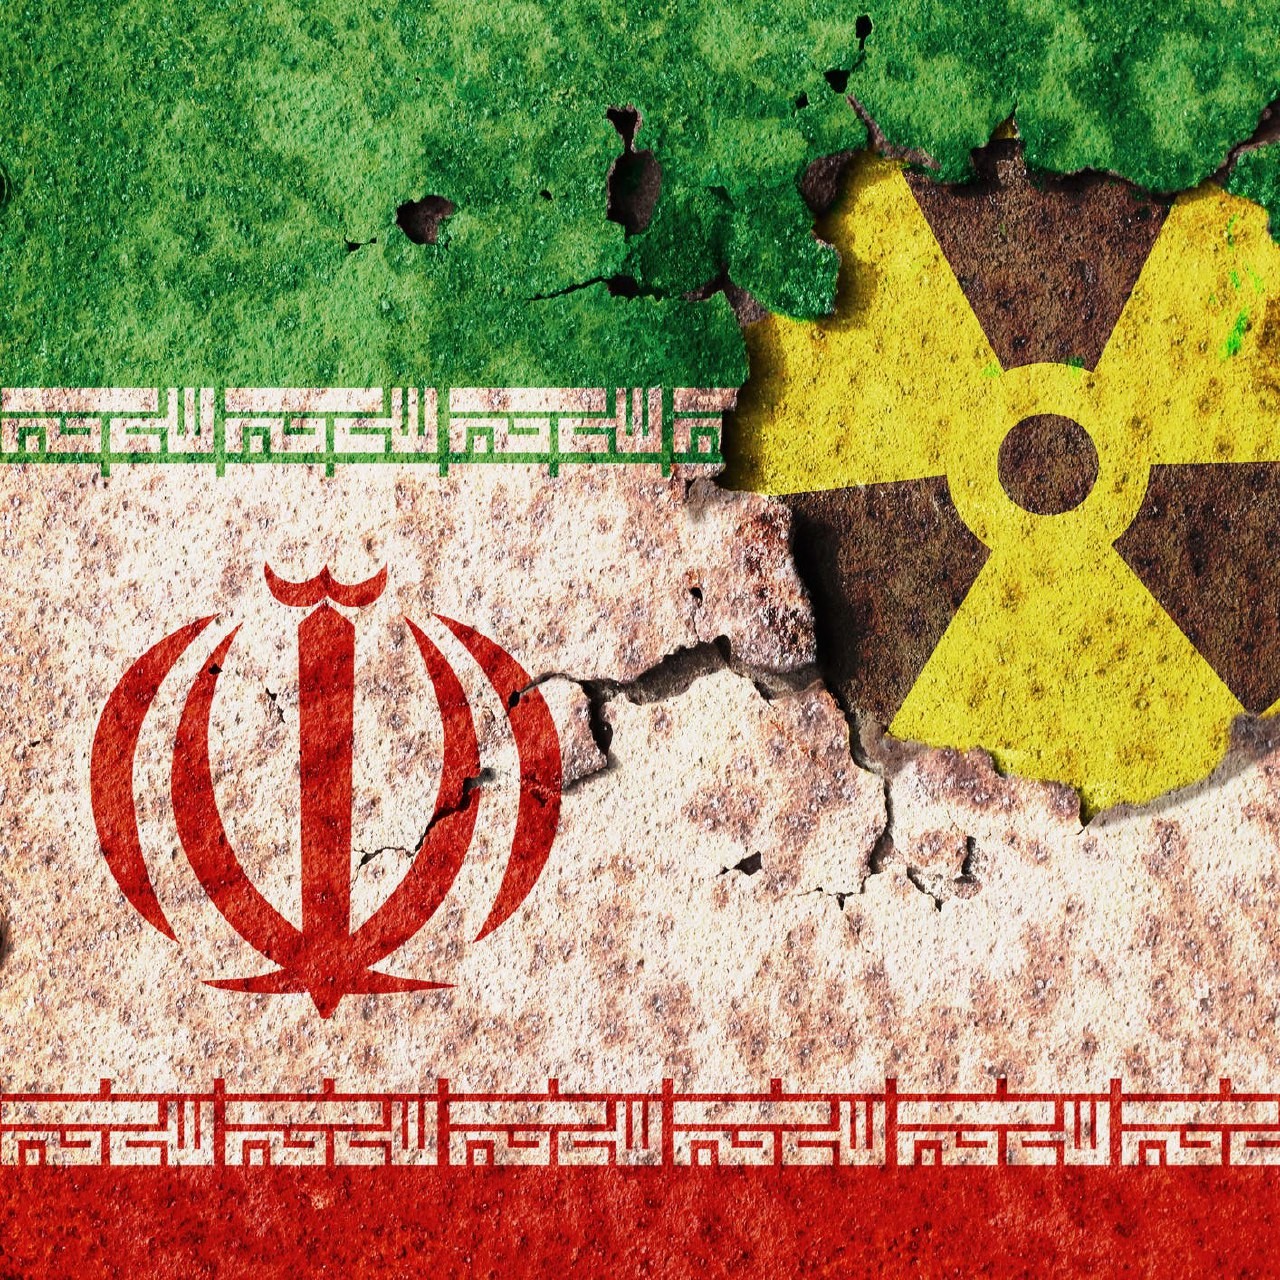 المصادر أكدت أن إيران قد ترفع مستوى تخصيب اليورانيوم قريبا، لكسب نفوذ في محادثات ​فيينا